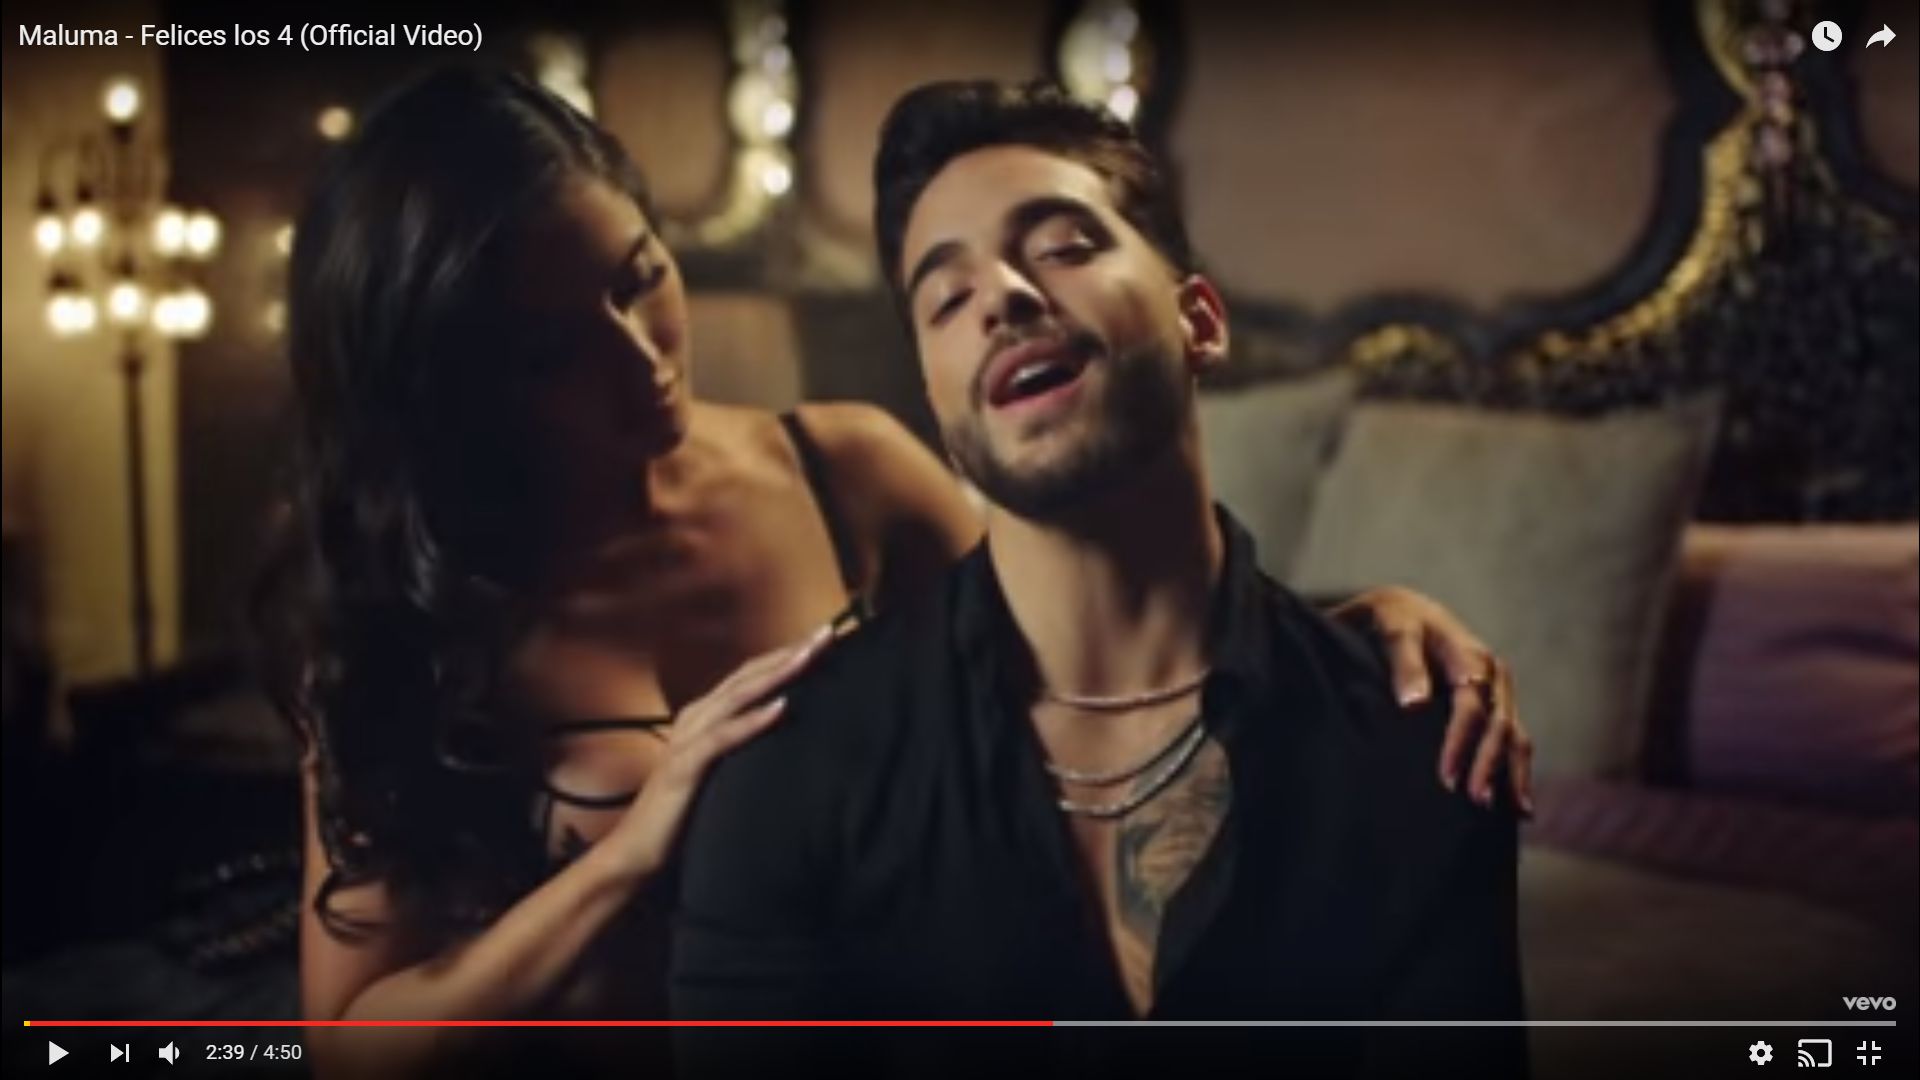 Maluma lanzó clip de tema 'Felices los 4' para alegría de sus seguidores aparece con el torso desnudo. (Captura)